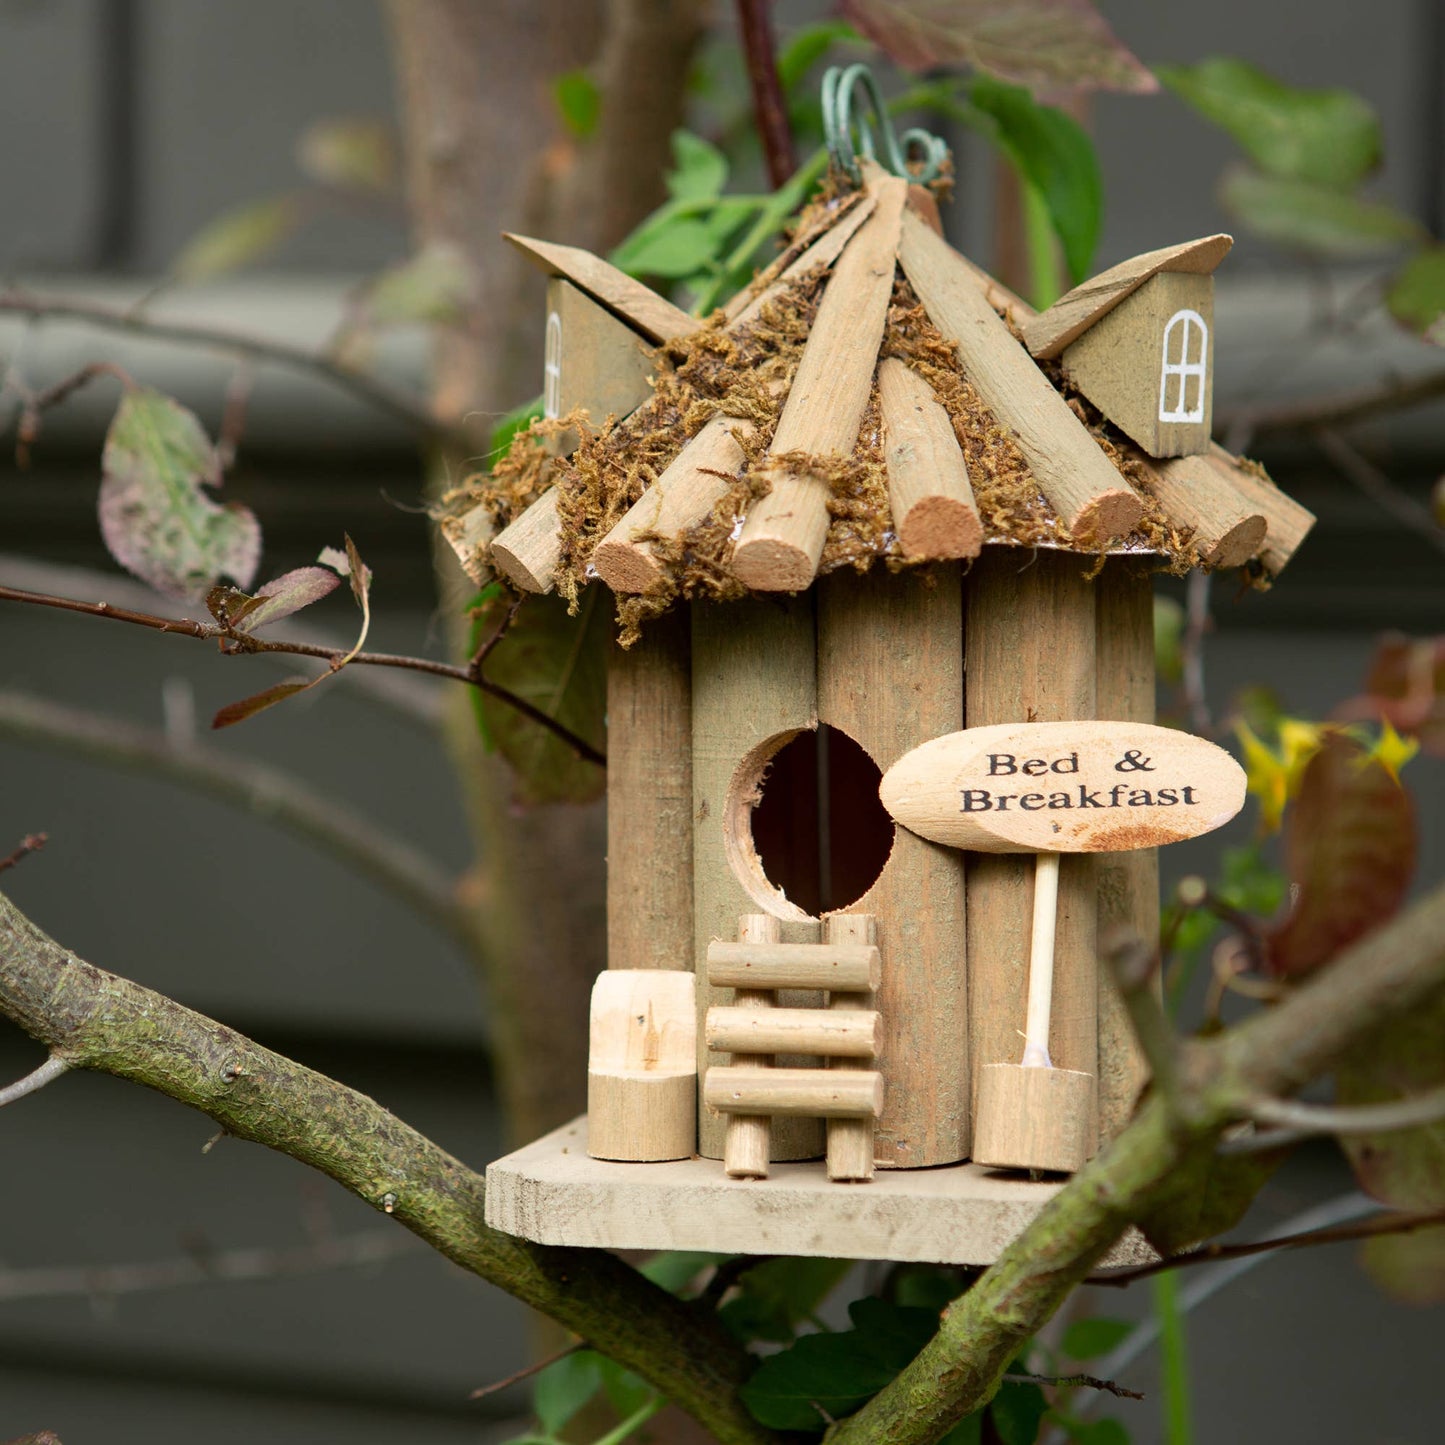 Bed n Breakfast Wooden Birdhouse Outdoor Bird Houses Hanging Garden Decor Wood